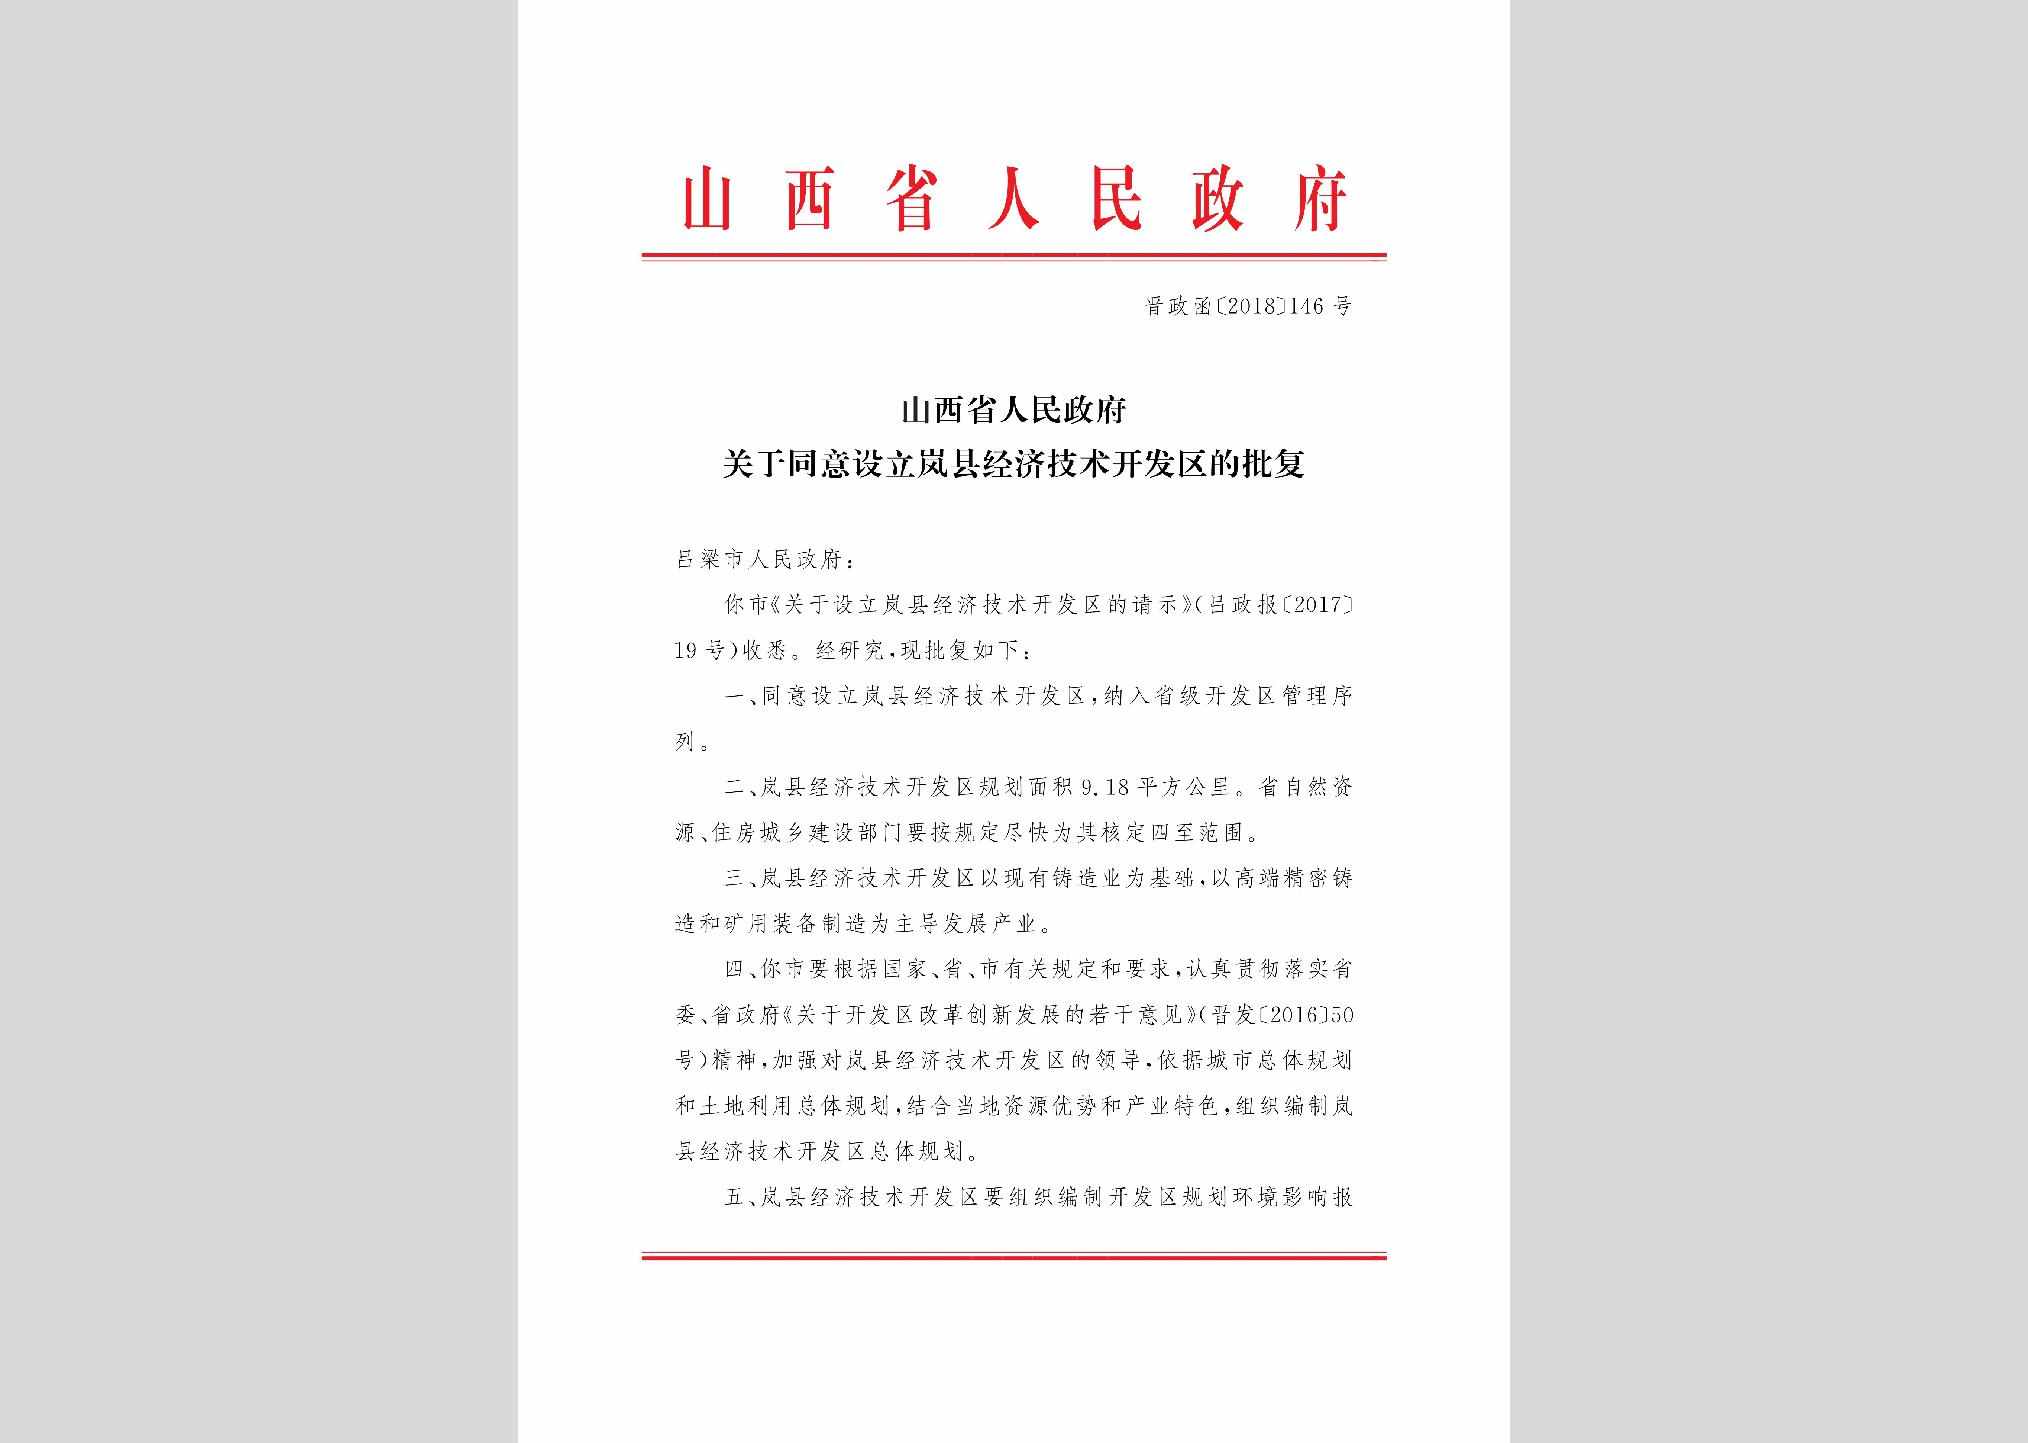 晋政函[2018]146号：山西省人民政府关于同意设立岚县经济技术开发区的批复